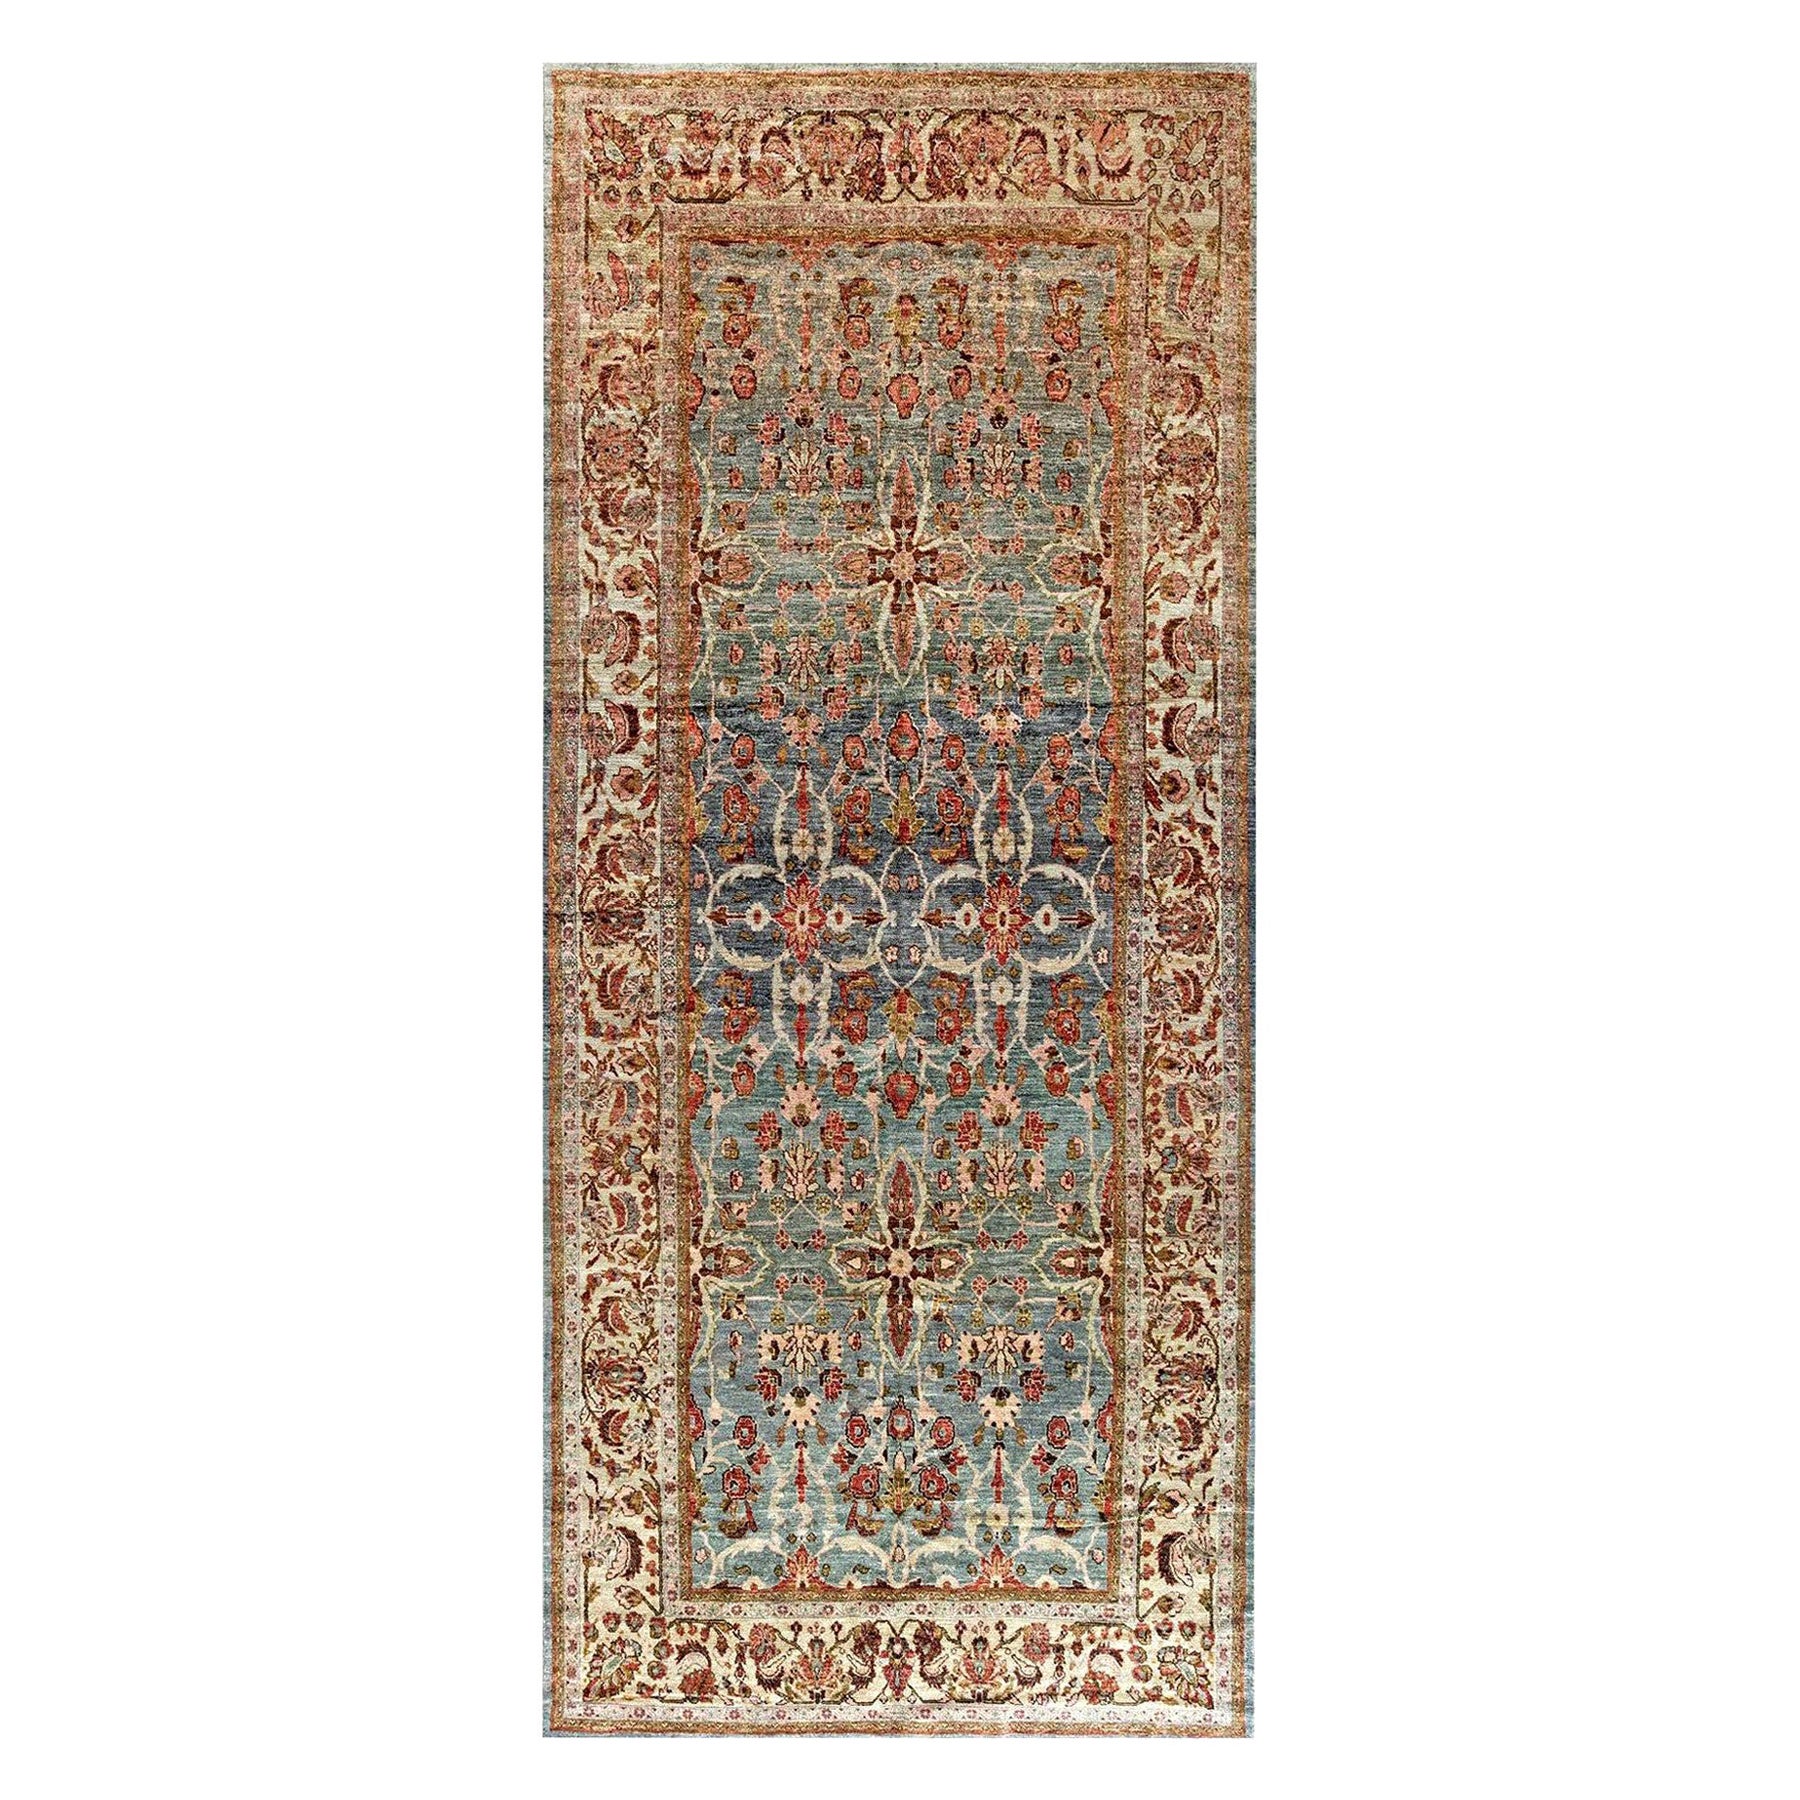 Zeitgenössischer, traditioneller, orientalisch inspirierter Teppich von Doris Leslie Blau